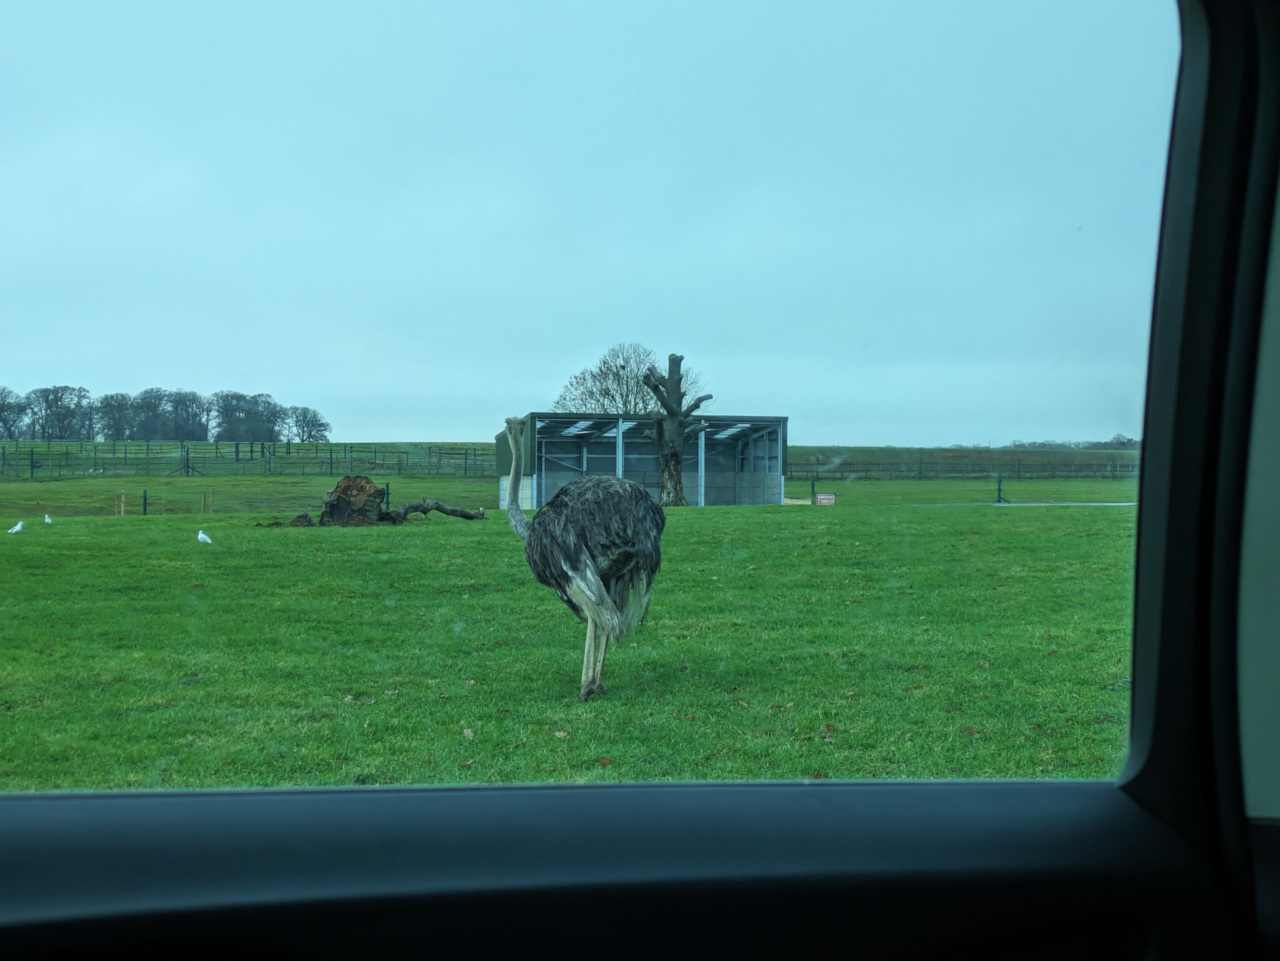 Ostrich standing on grass